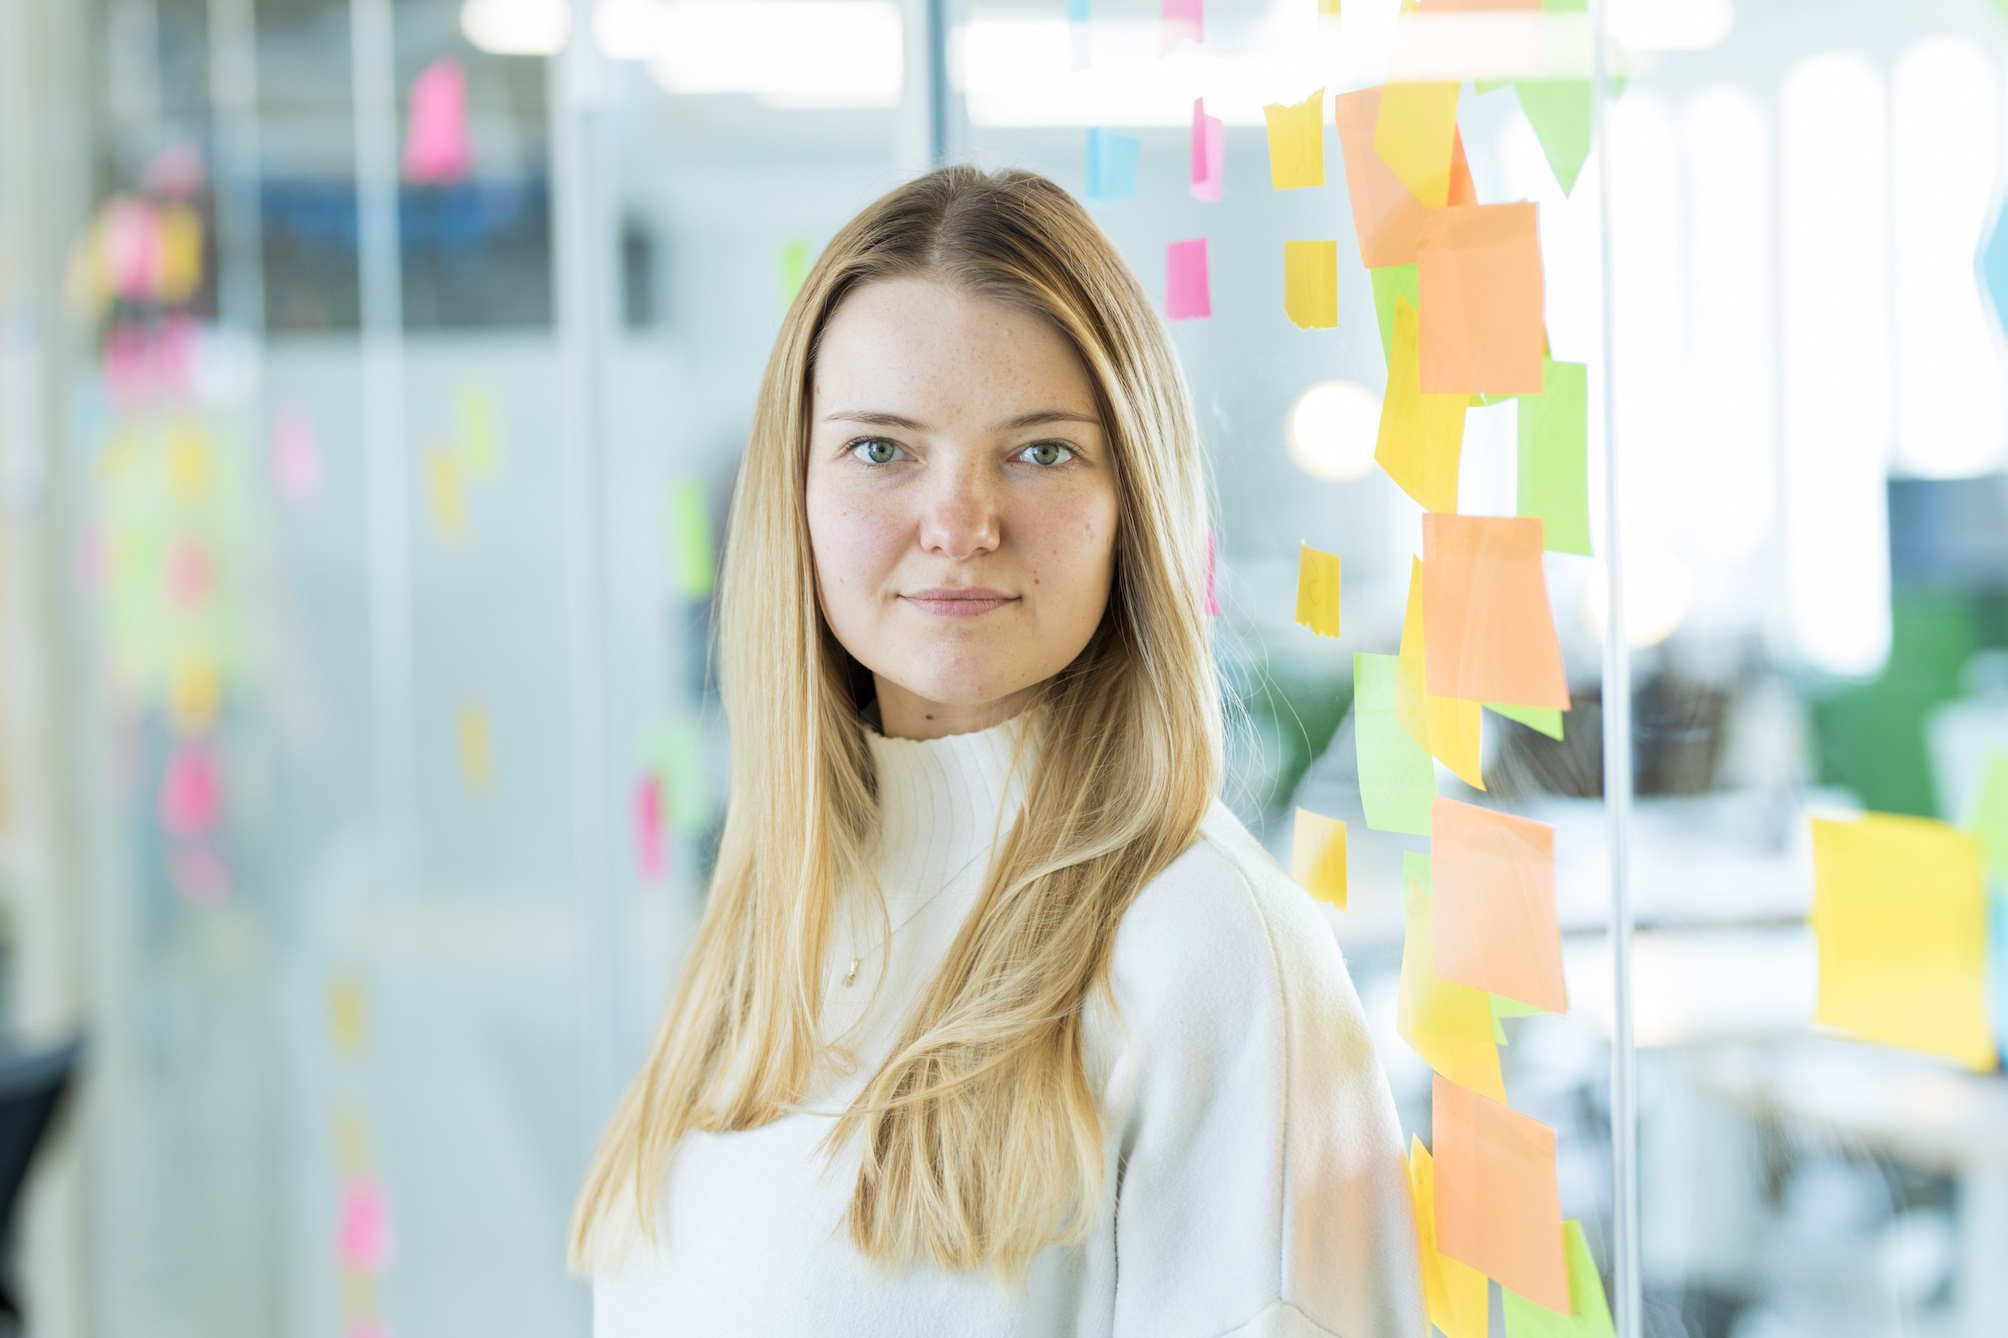 Carolin, Produktmanagerin beim DigitalService, steht im Büro des Unternehmens vor einer Glaswand, die mit vielen bunten Notizzetteln verziert ist. Sie hat blonde, lange Haare und trägt einen hellen Rollkragenpullover.